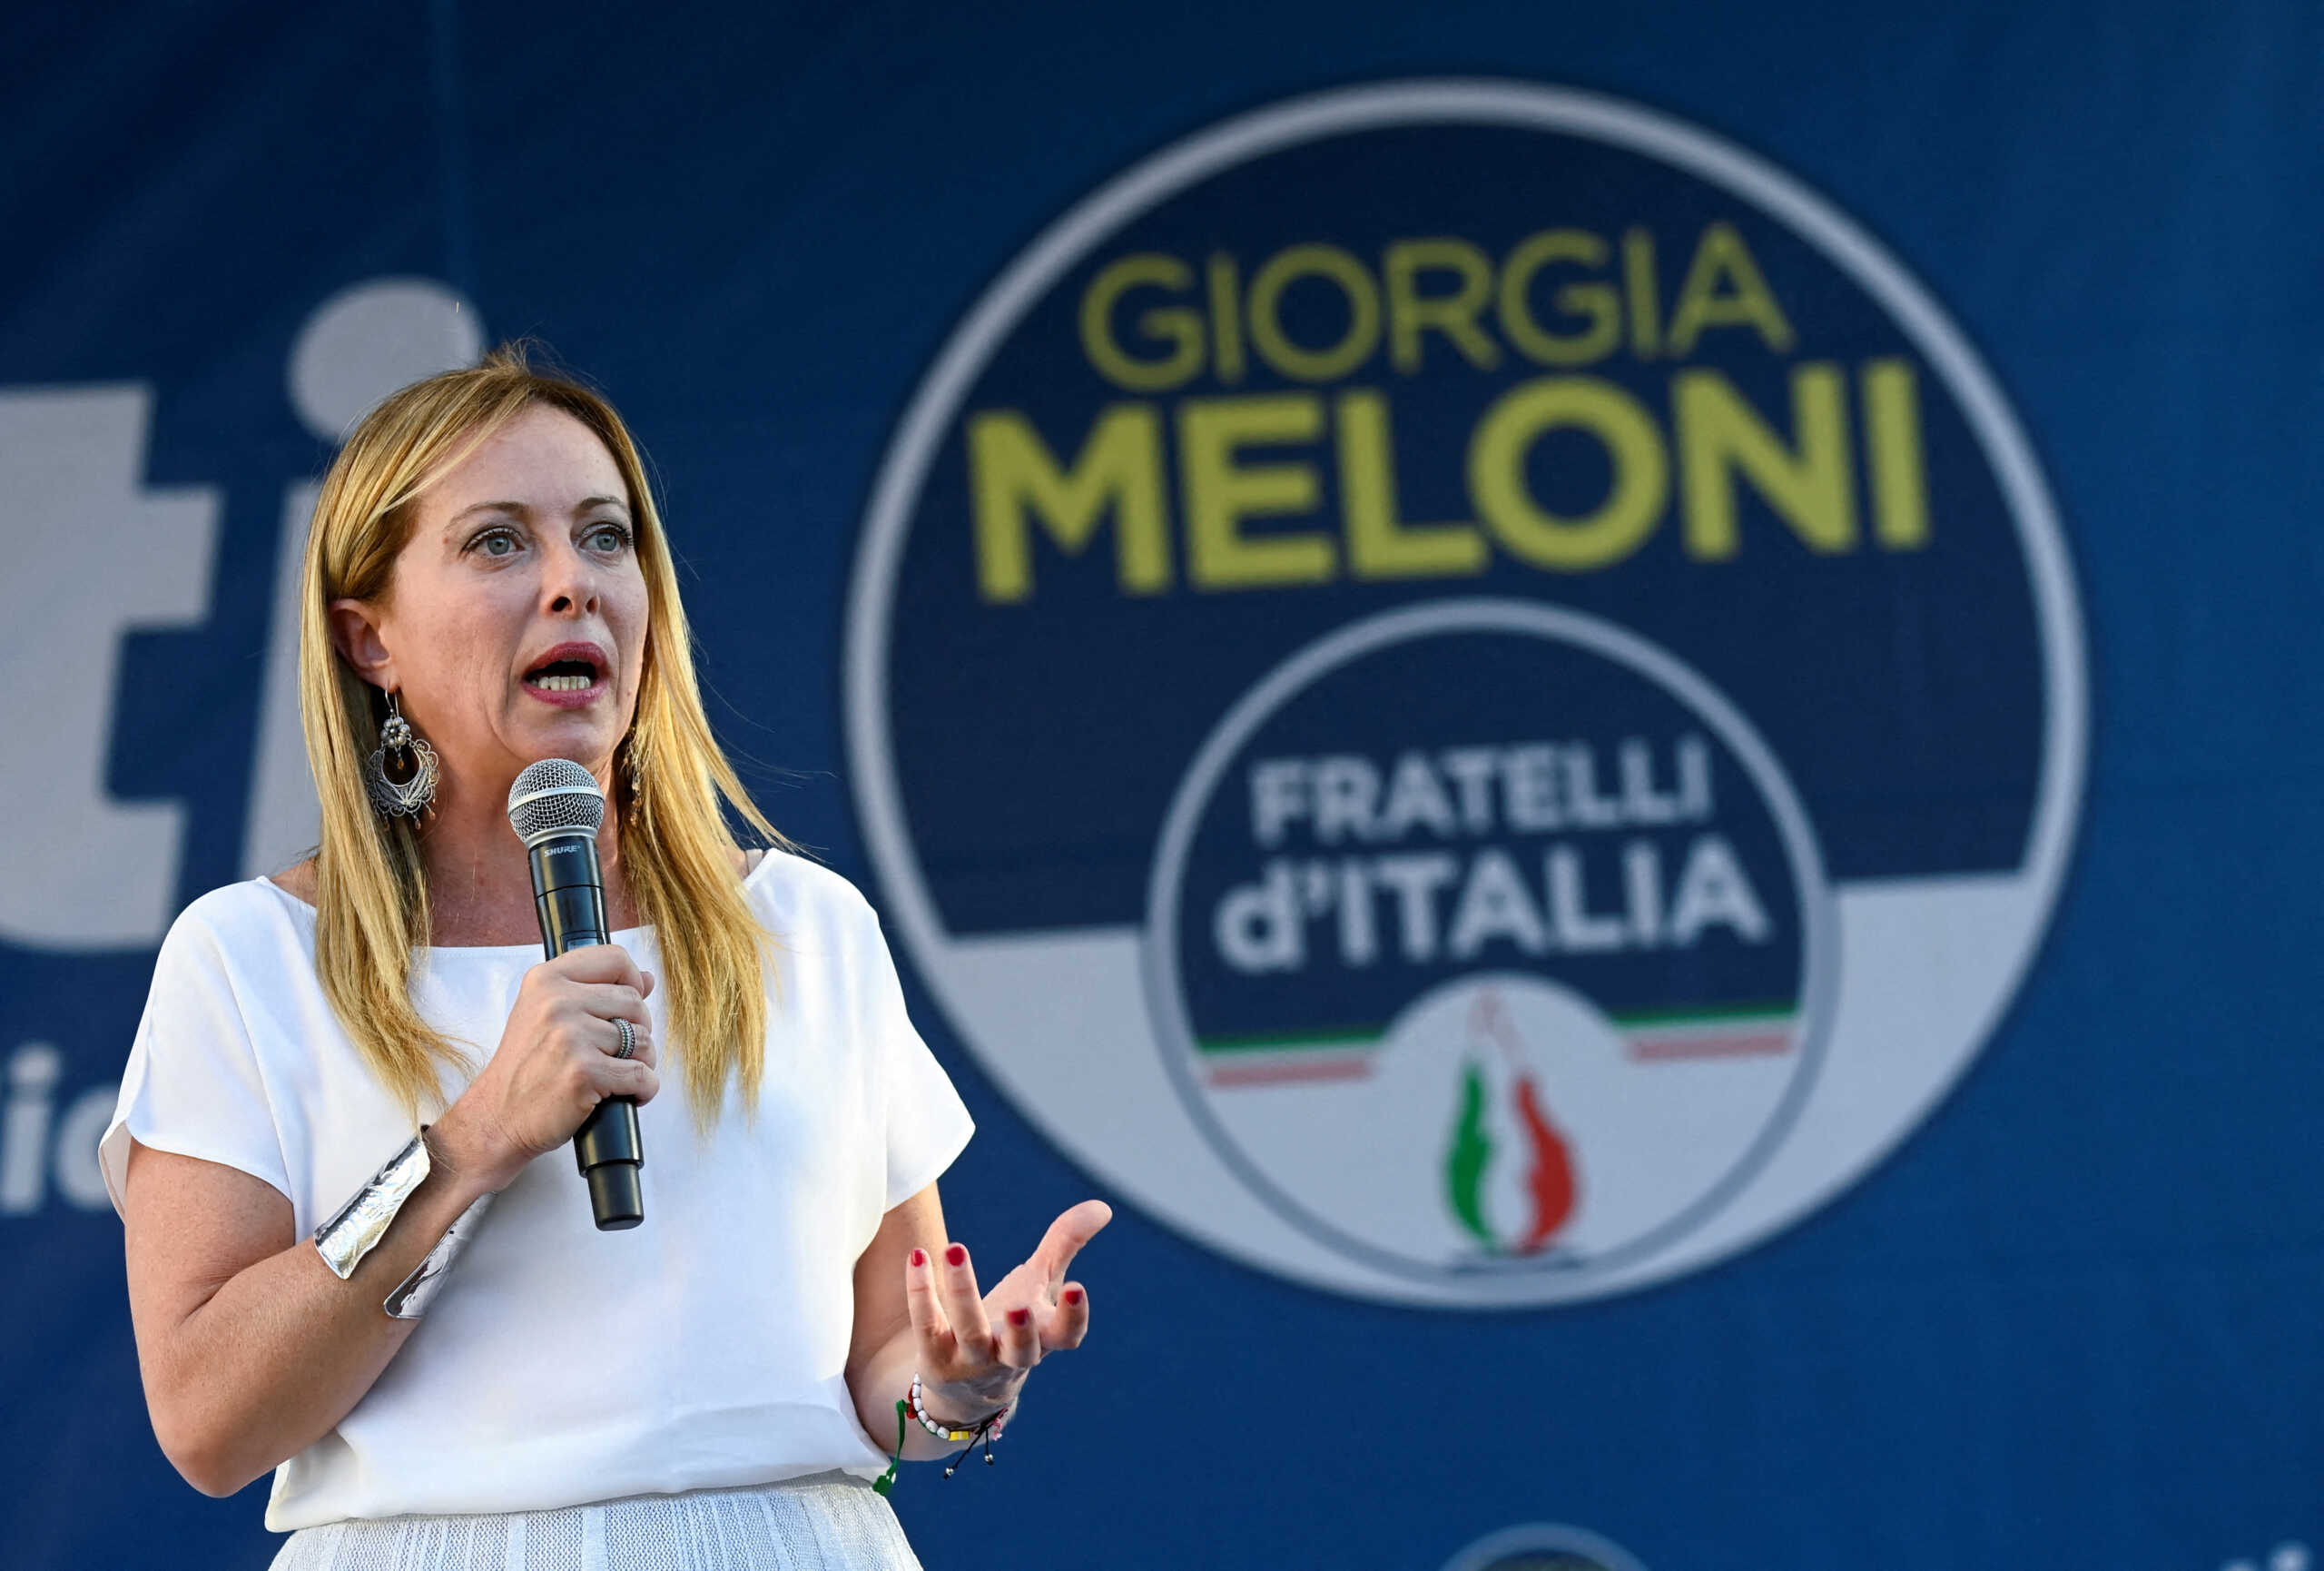 Εκλογές στην Ιταλία: Πως «διαβάζει» η Αθήνα την εκλογή Μελόνι – Αμηχανία από τη νίκη της ακροδεξιάς